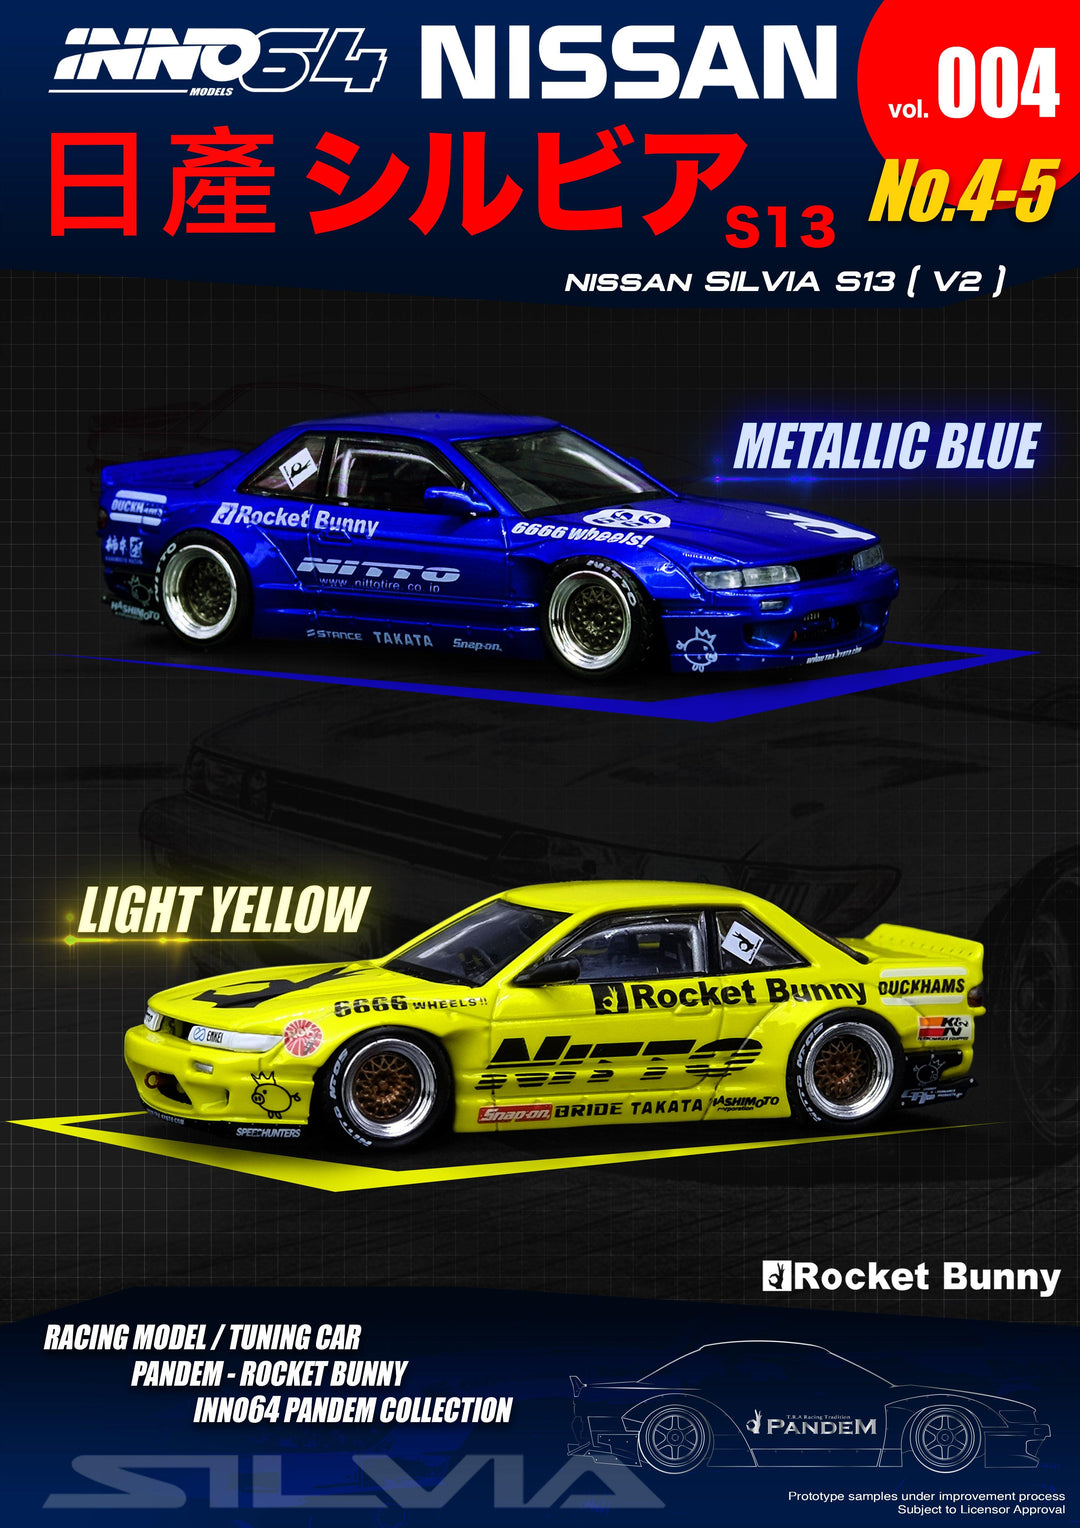 [Preorder] Inno64 1:64 Nissan Silvia S13 V2 Pandem/Rocket Bunny Light Yellow - Horizon Diecast